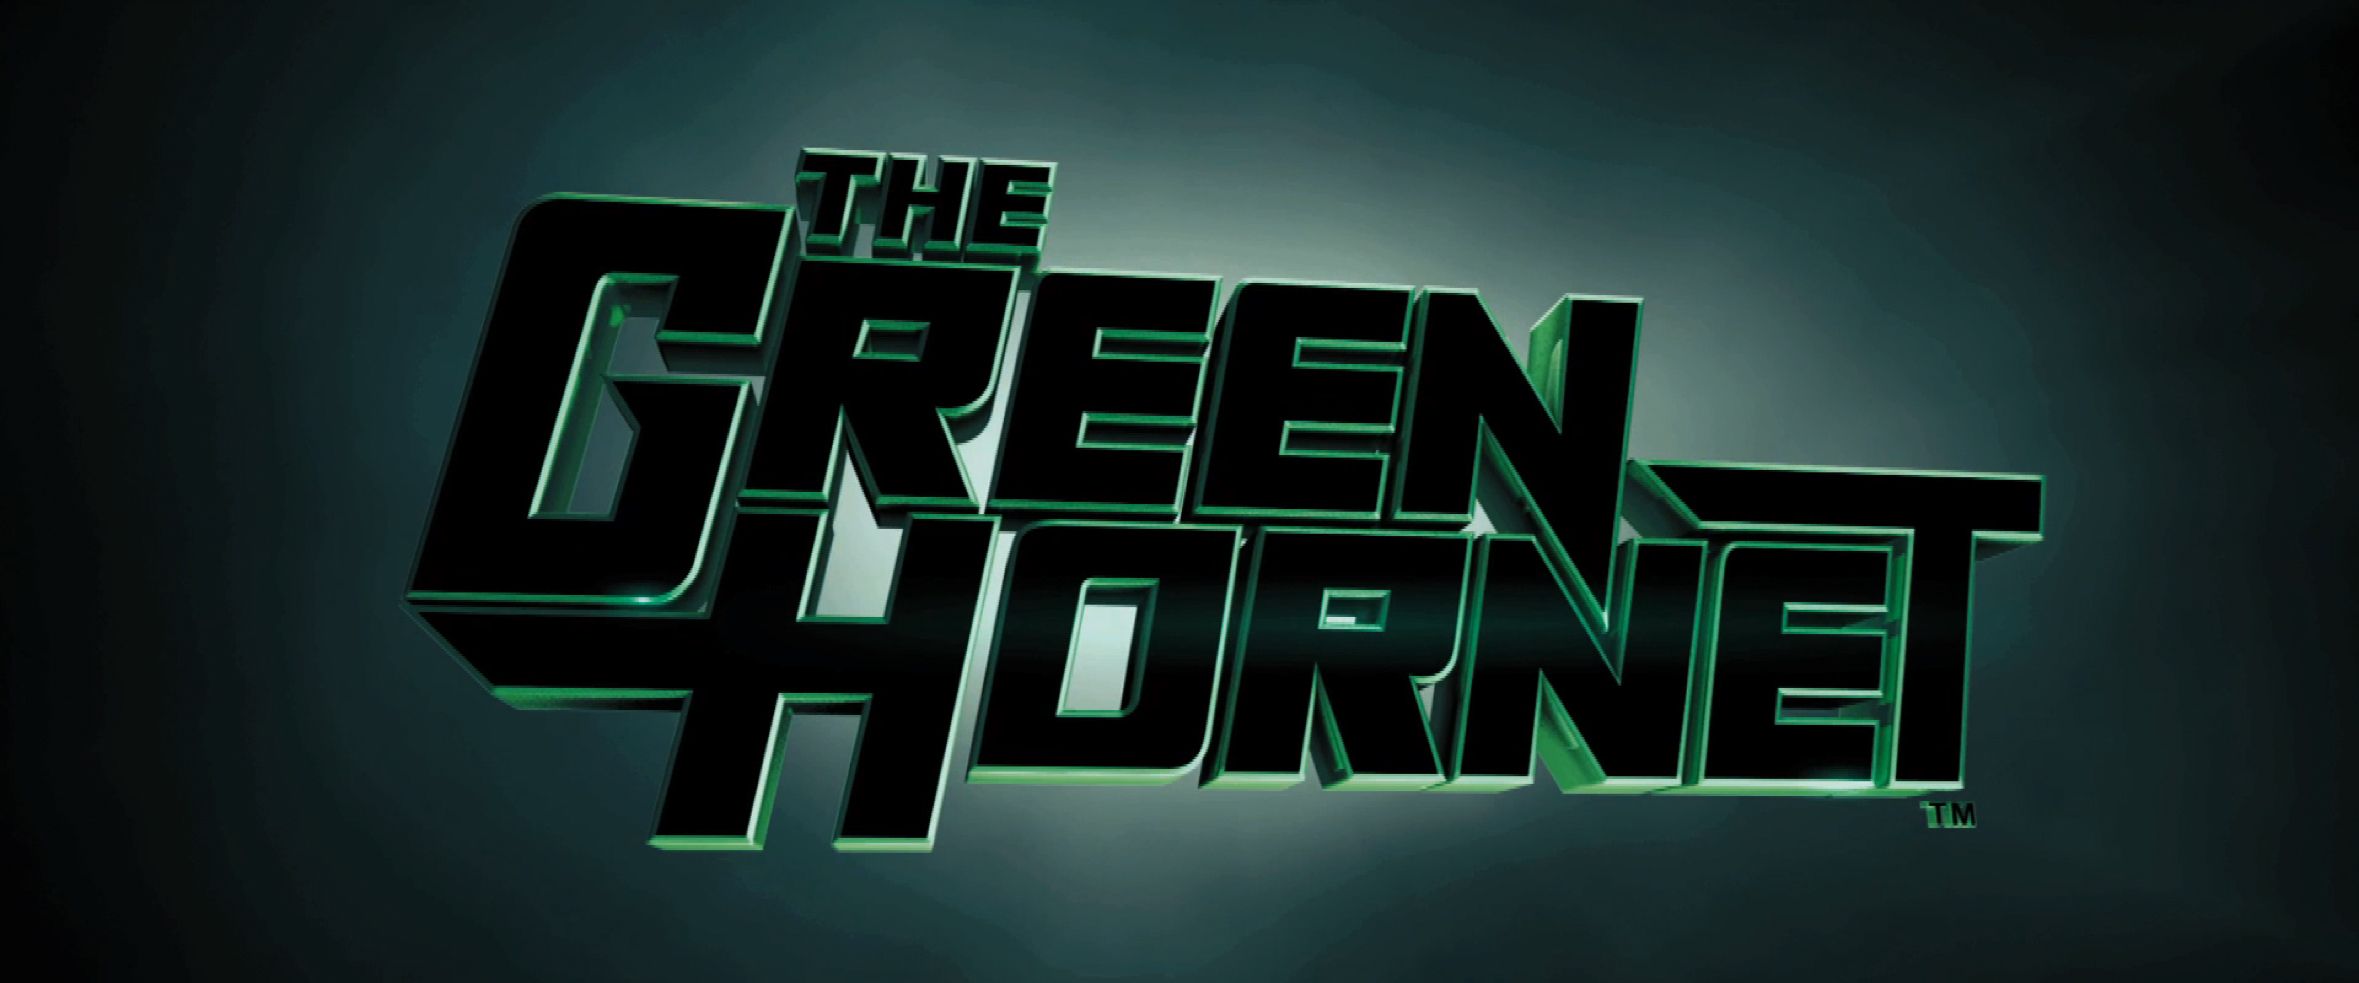 The Green Hornet Trailer Still #1